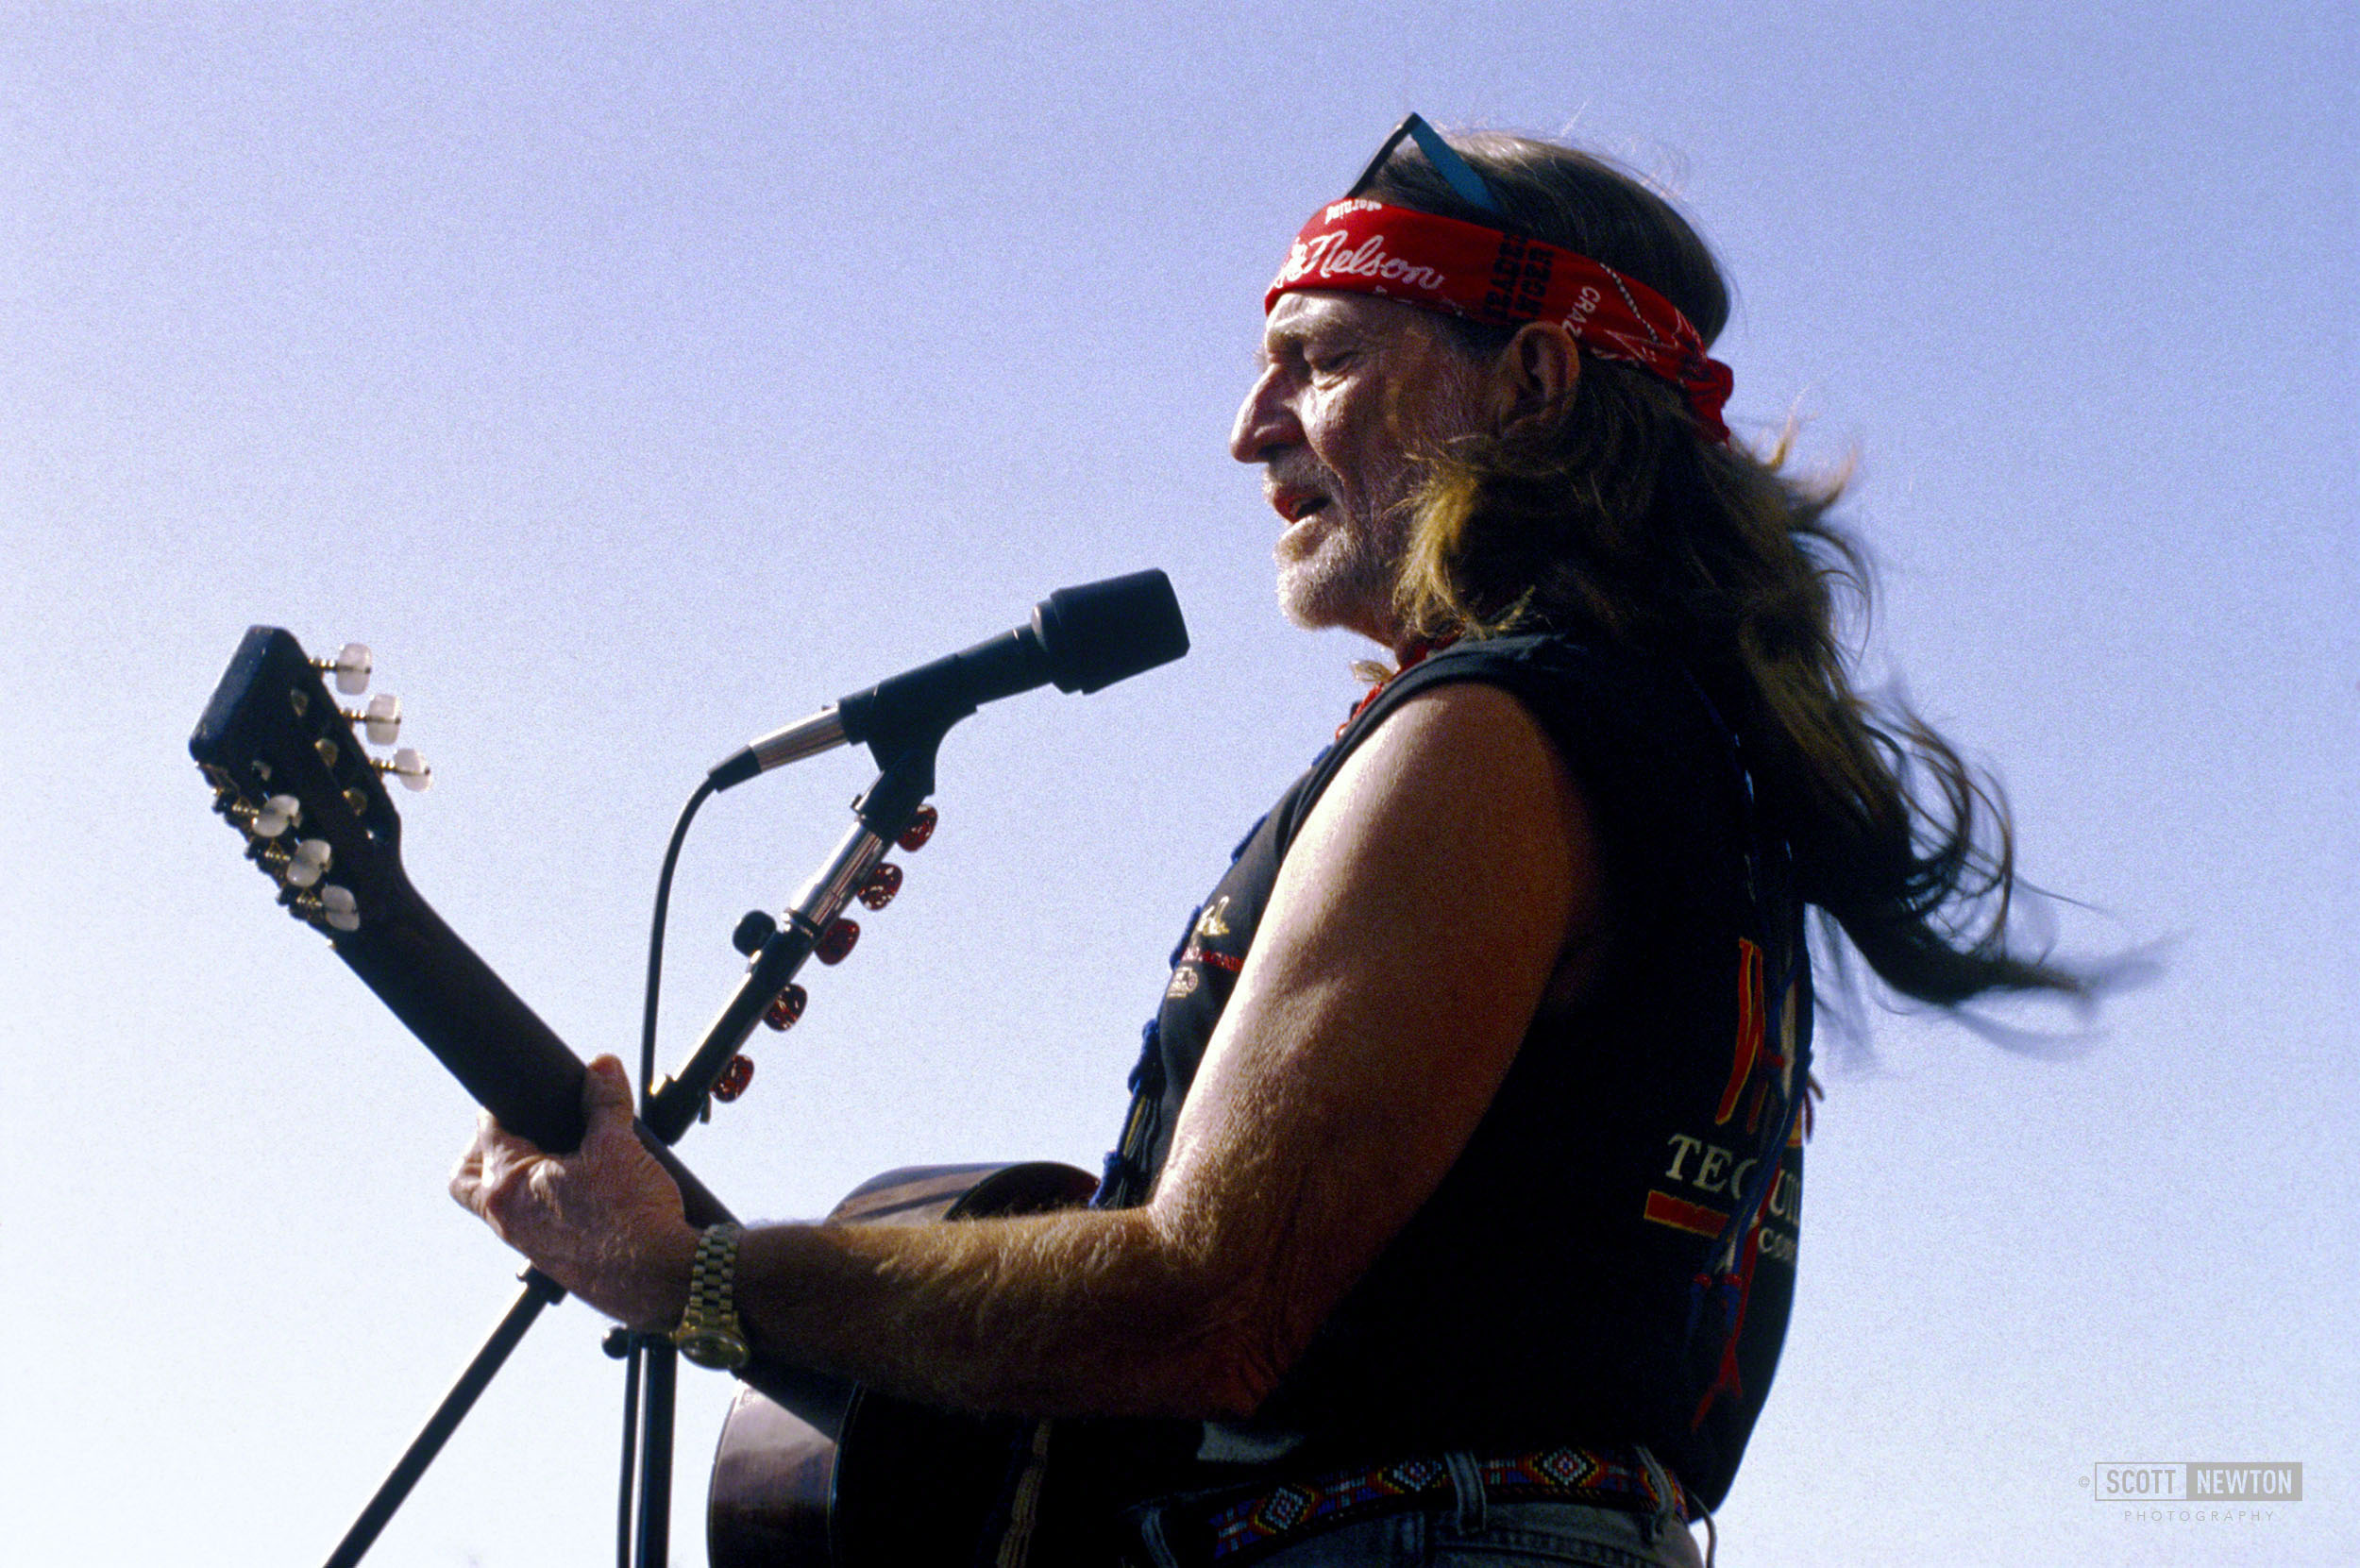 Willie @ Austin 1995